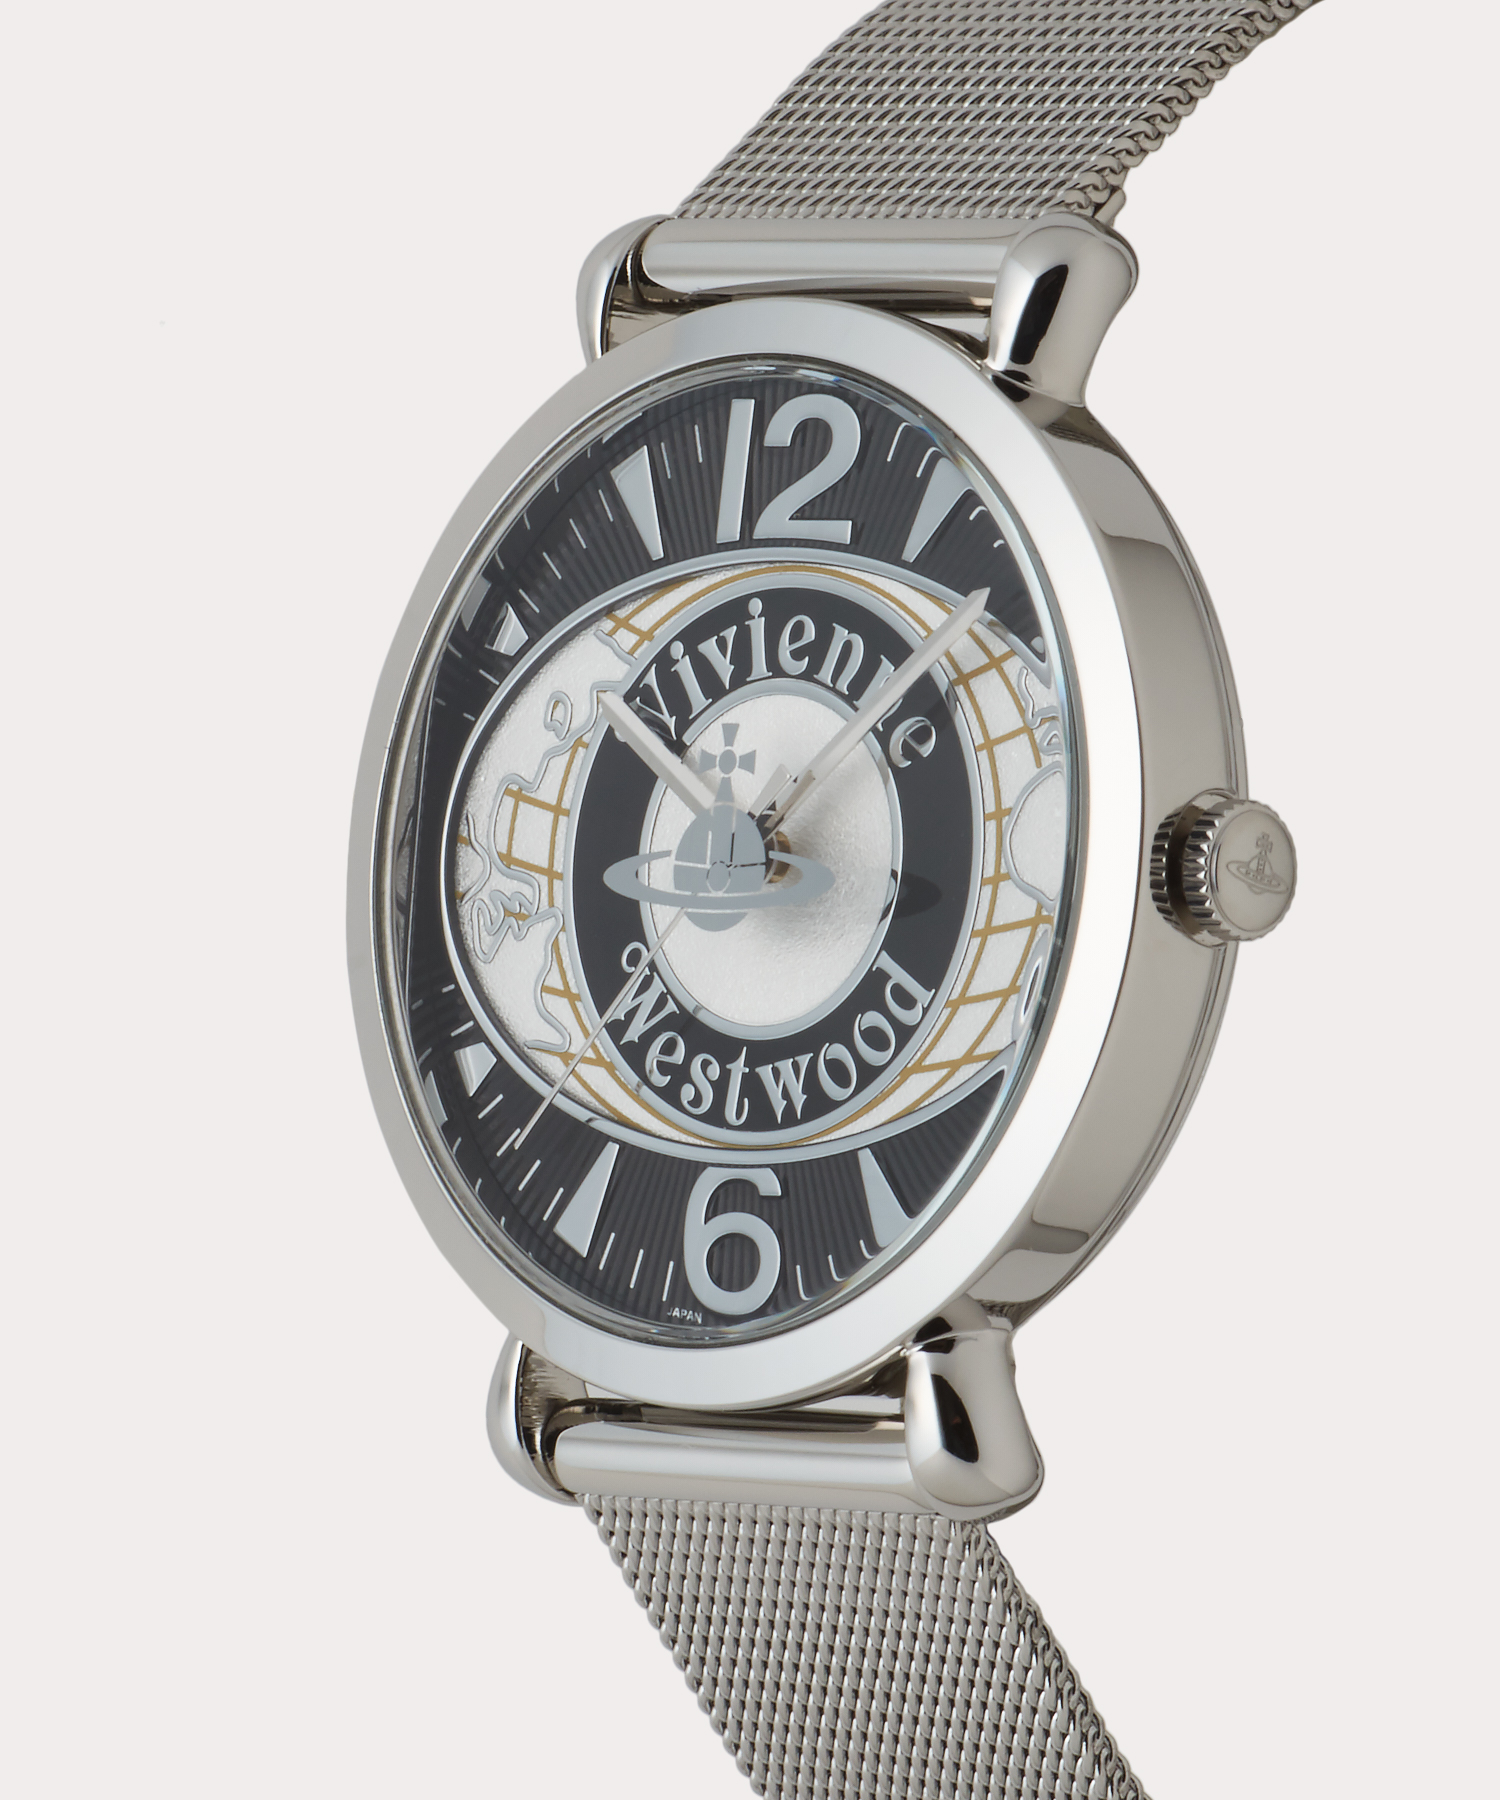 ヴィヴィアンウエストウッド(Vivienne Westwood) WORLD ORB ウォッチSV | TIME'S GEAR あべのキューズモール店  | ブランド腕時計の正規販売店紹介サイトGressive/グレッシブ